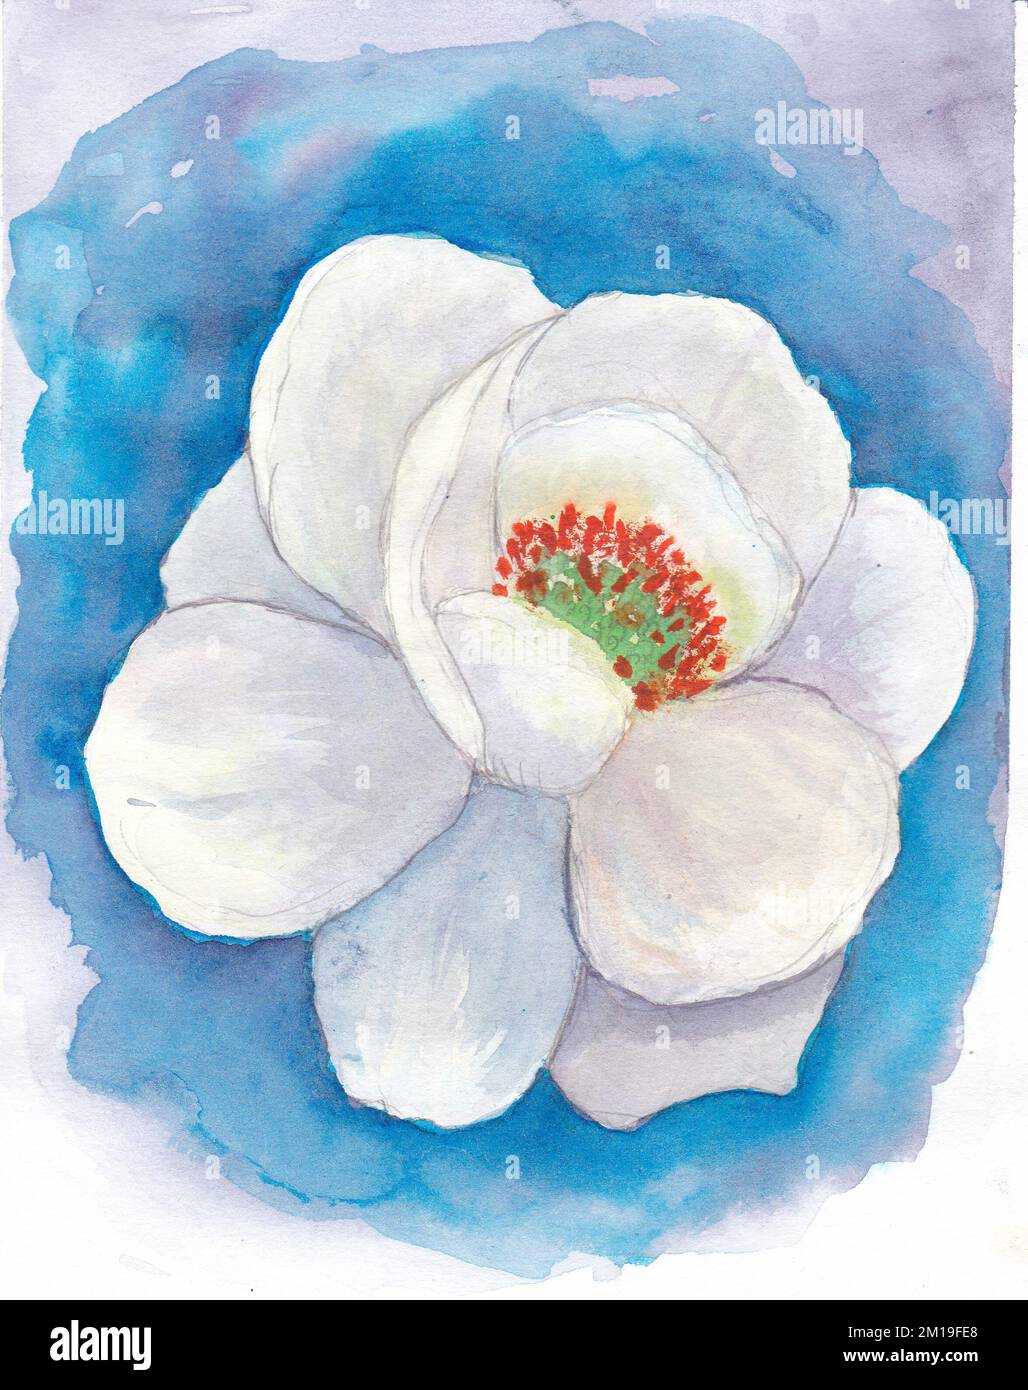 Fiore bianco di magnolia su sfondo blu. Disegno acquerello. Verniciatura disegno a mano. Disegnato a mano Foto Stock